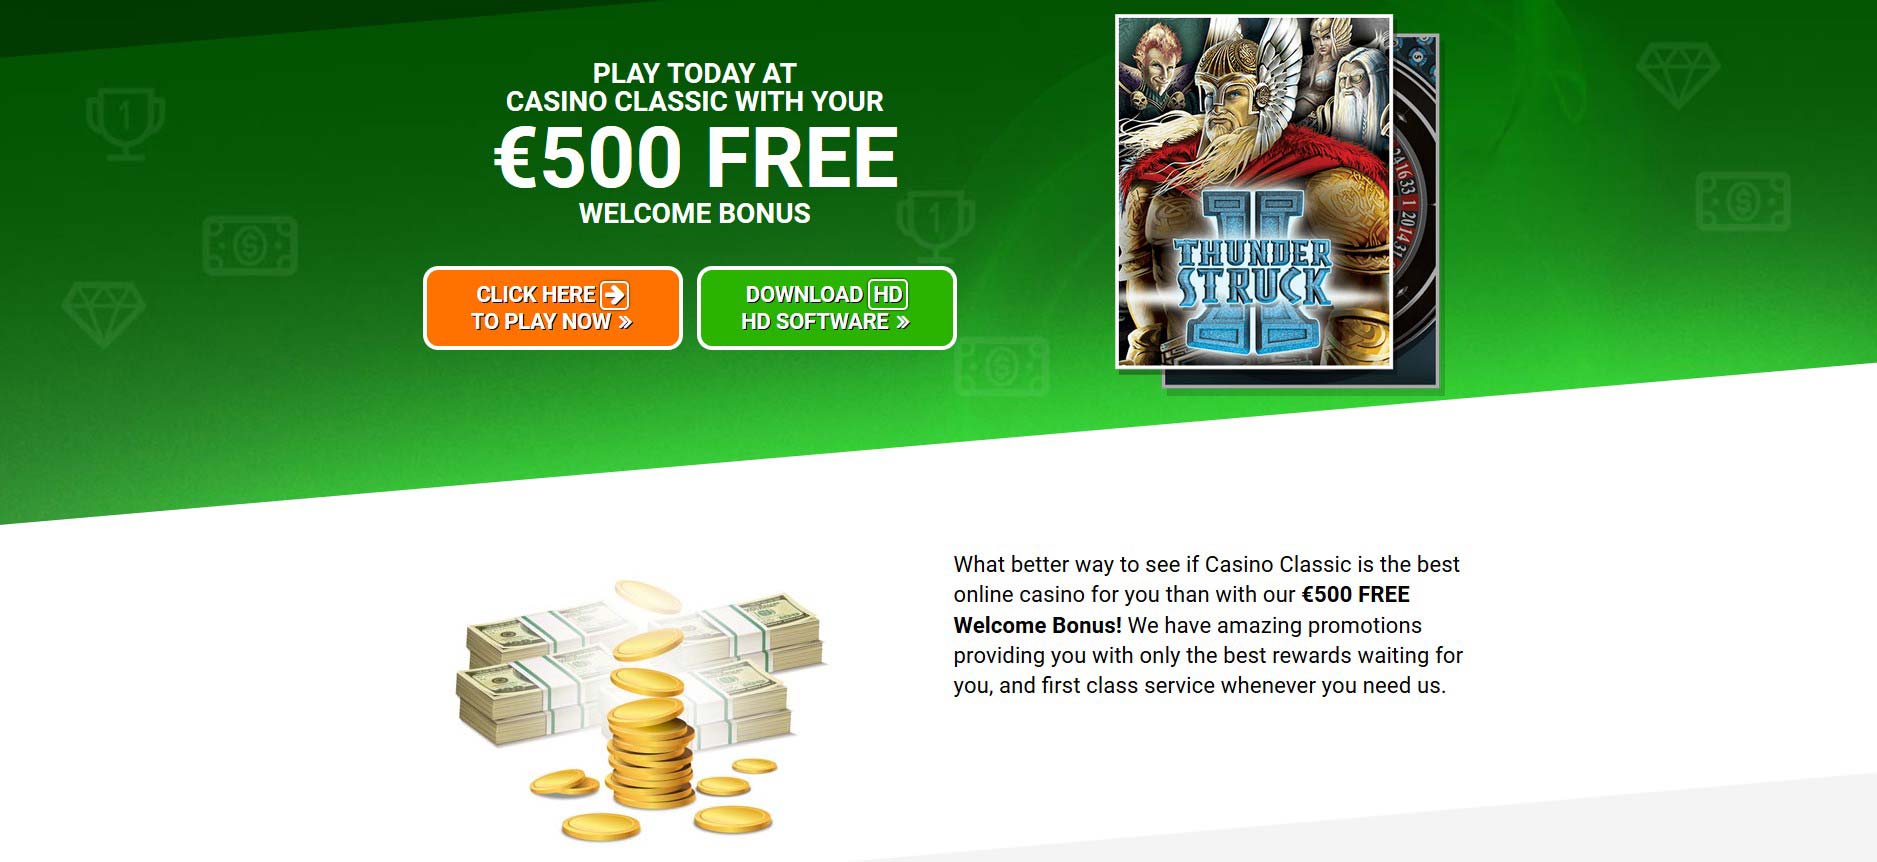 Онлайн казино с приветственным бонусом скачать mostbet на андроид бесплатно приложение где